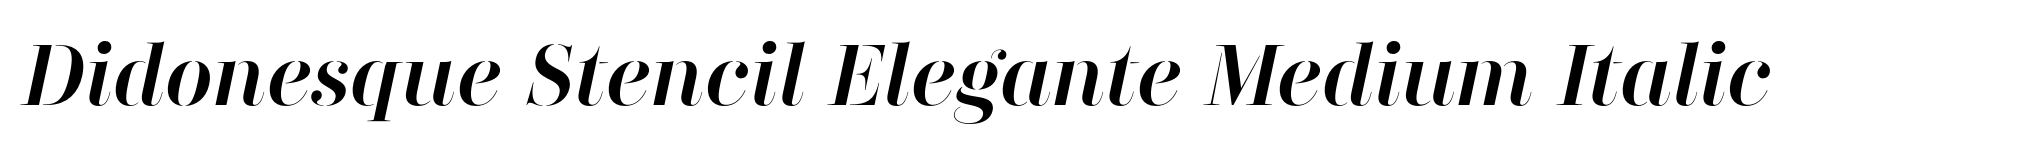 Didonesque Stencil Elegante Medium Italic image